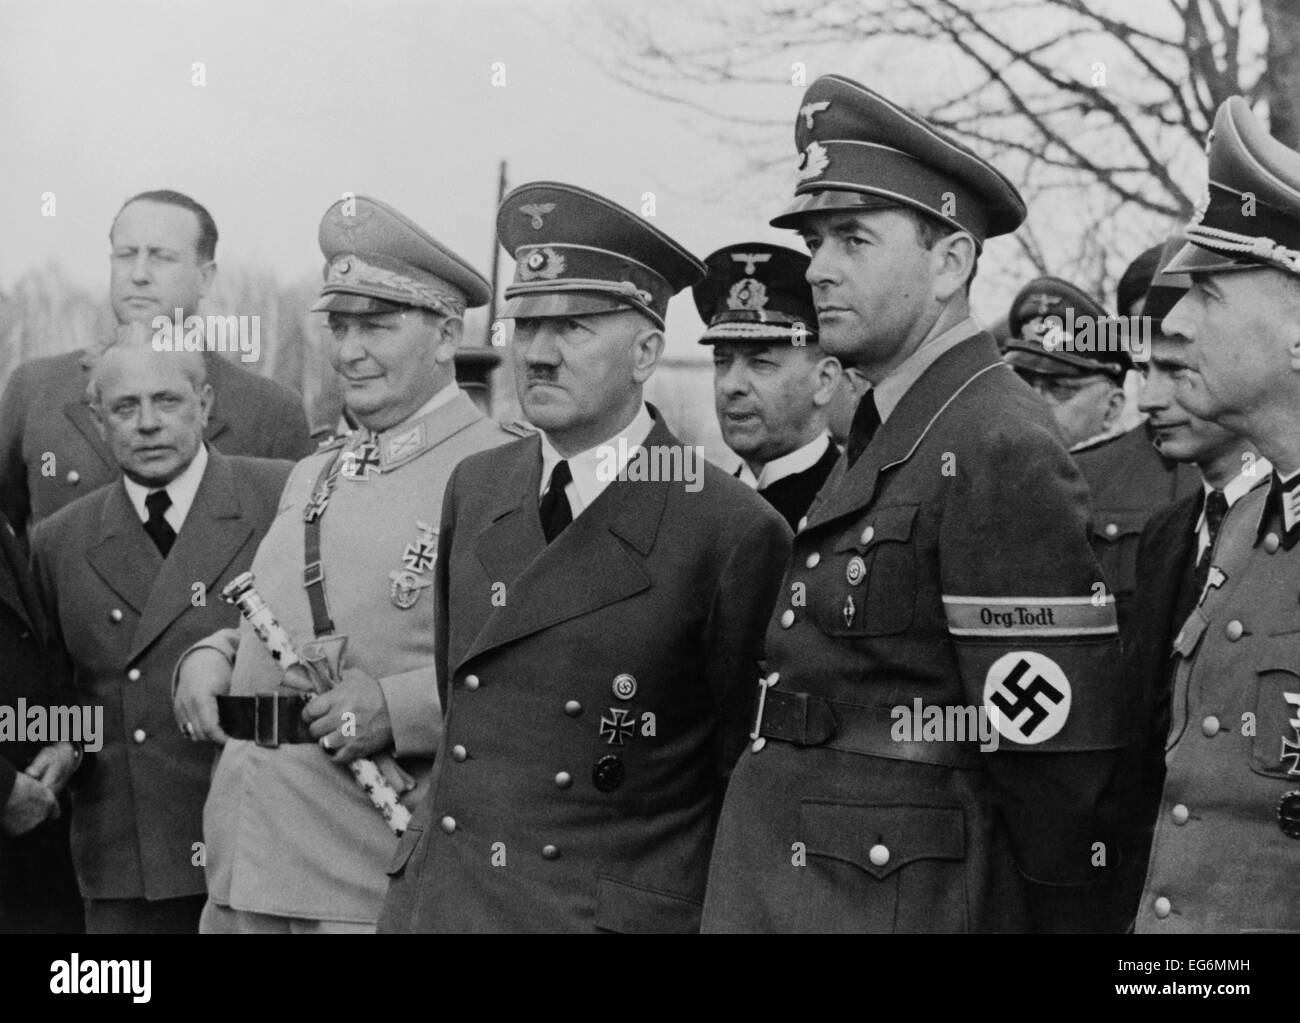 Adolf Hitler, fiancheggiata da Hermann Goering, e Albert Speer. Speer era ministro degli armamenti e la produzione bellica. Il suo 'Org. Tolt' Foto Stock